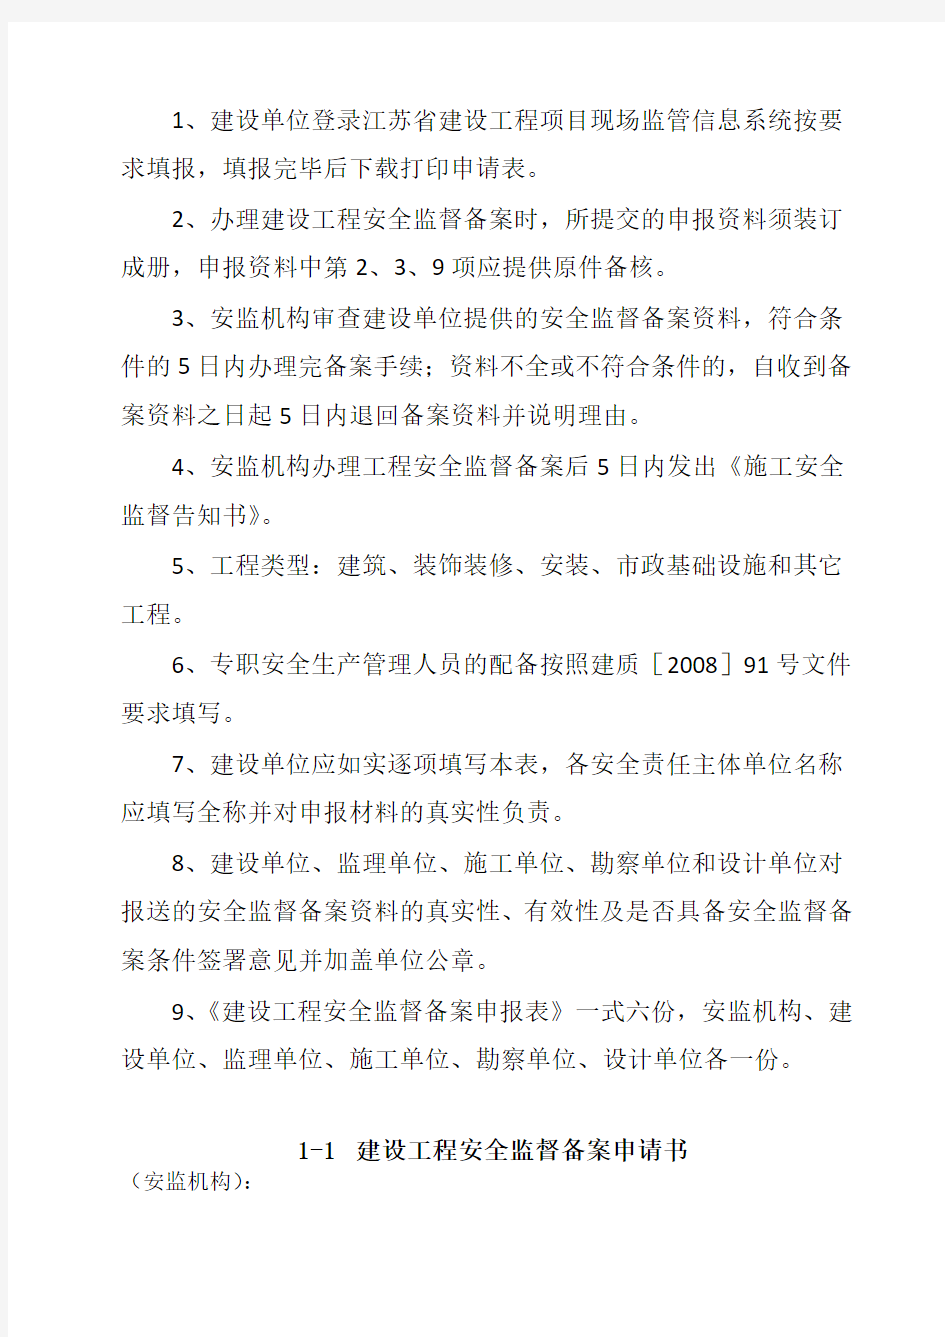 江苏省建设工程安全监督备案申请表(最新版附全套资料)